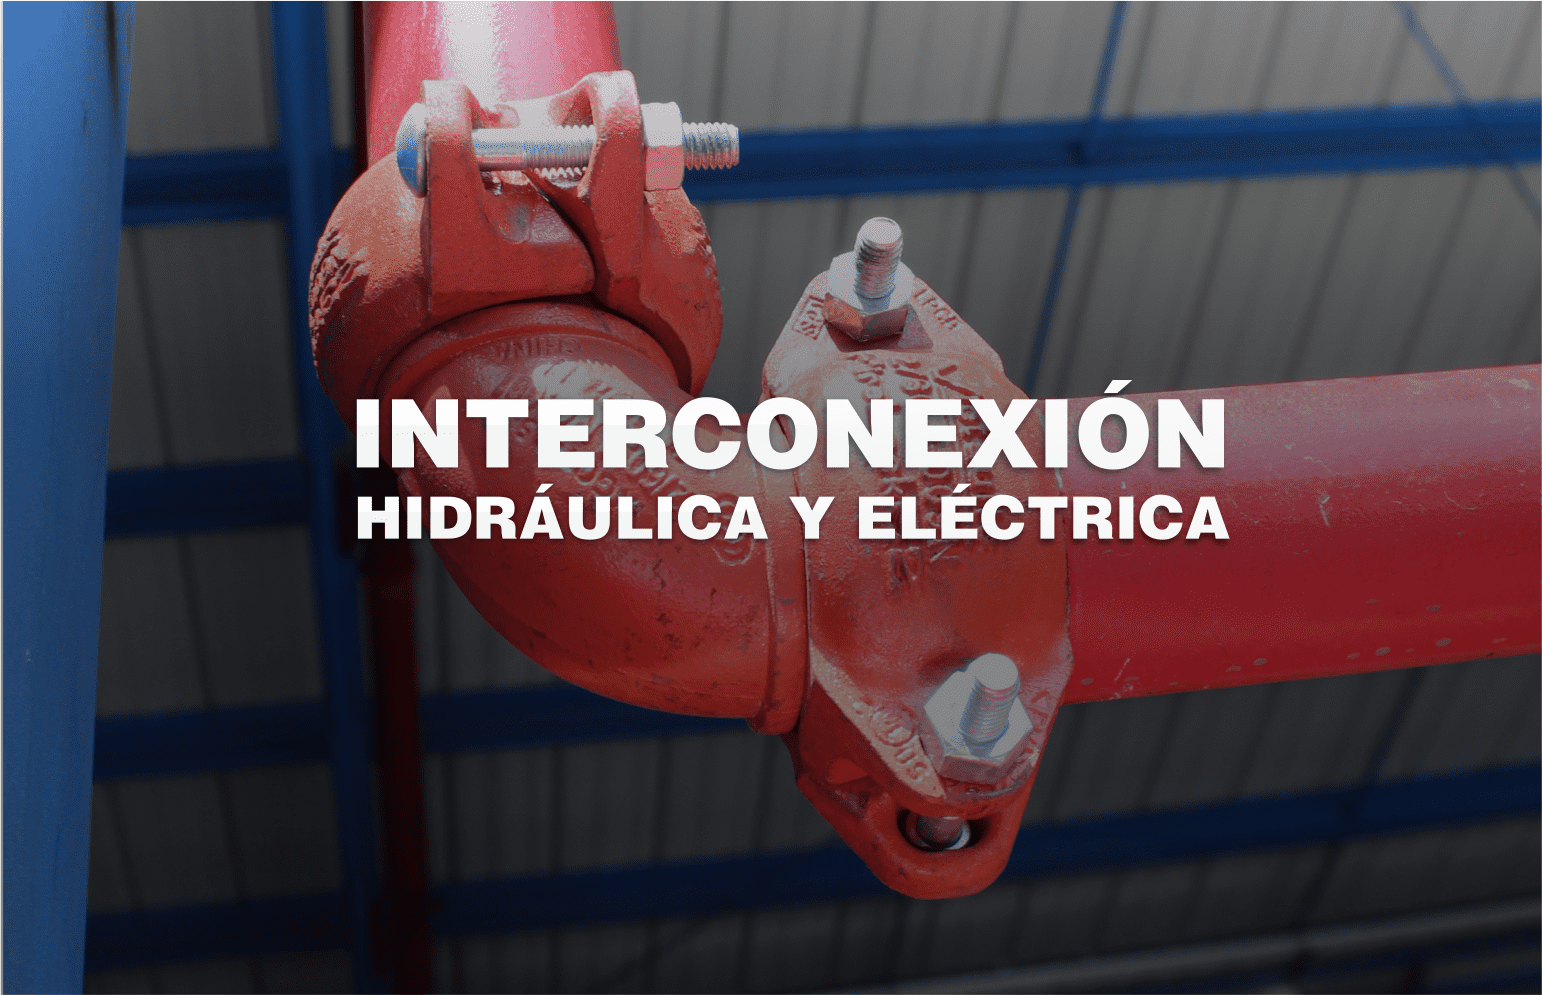 Interconexión Hidráulica y Eléctrica